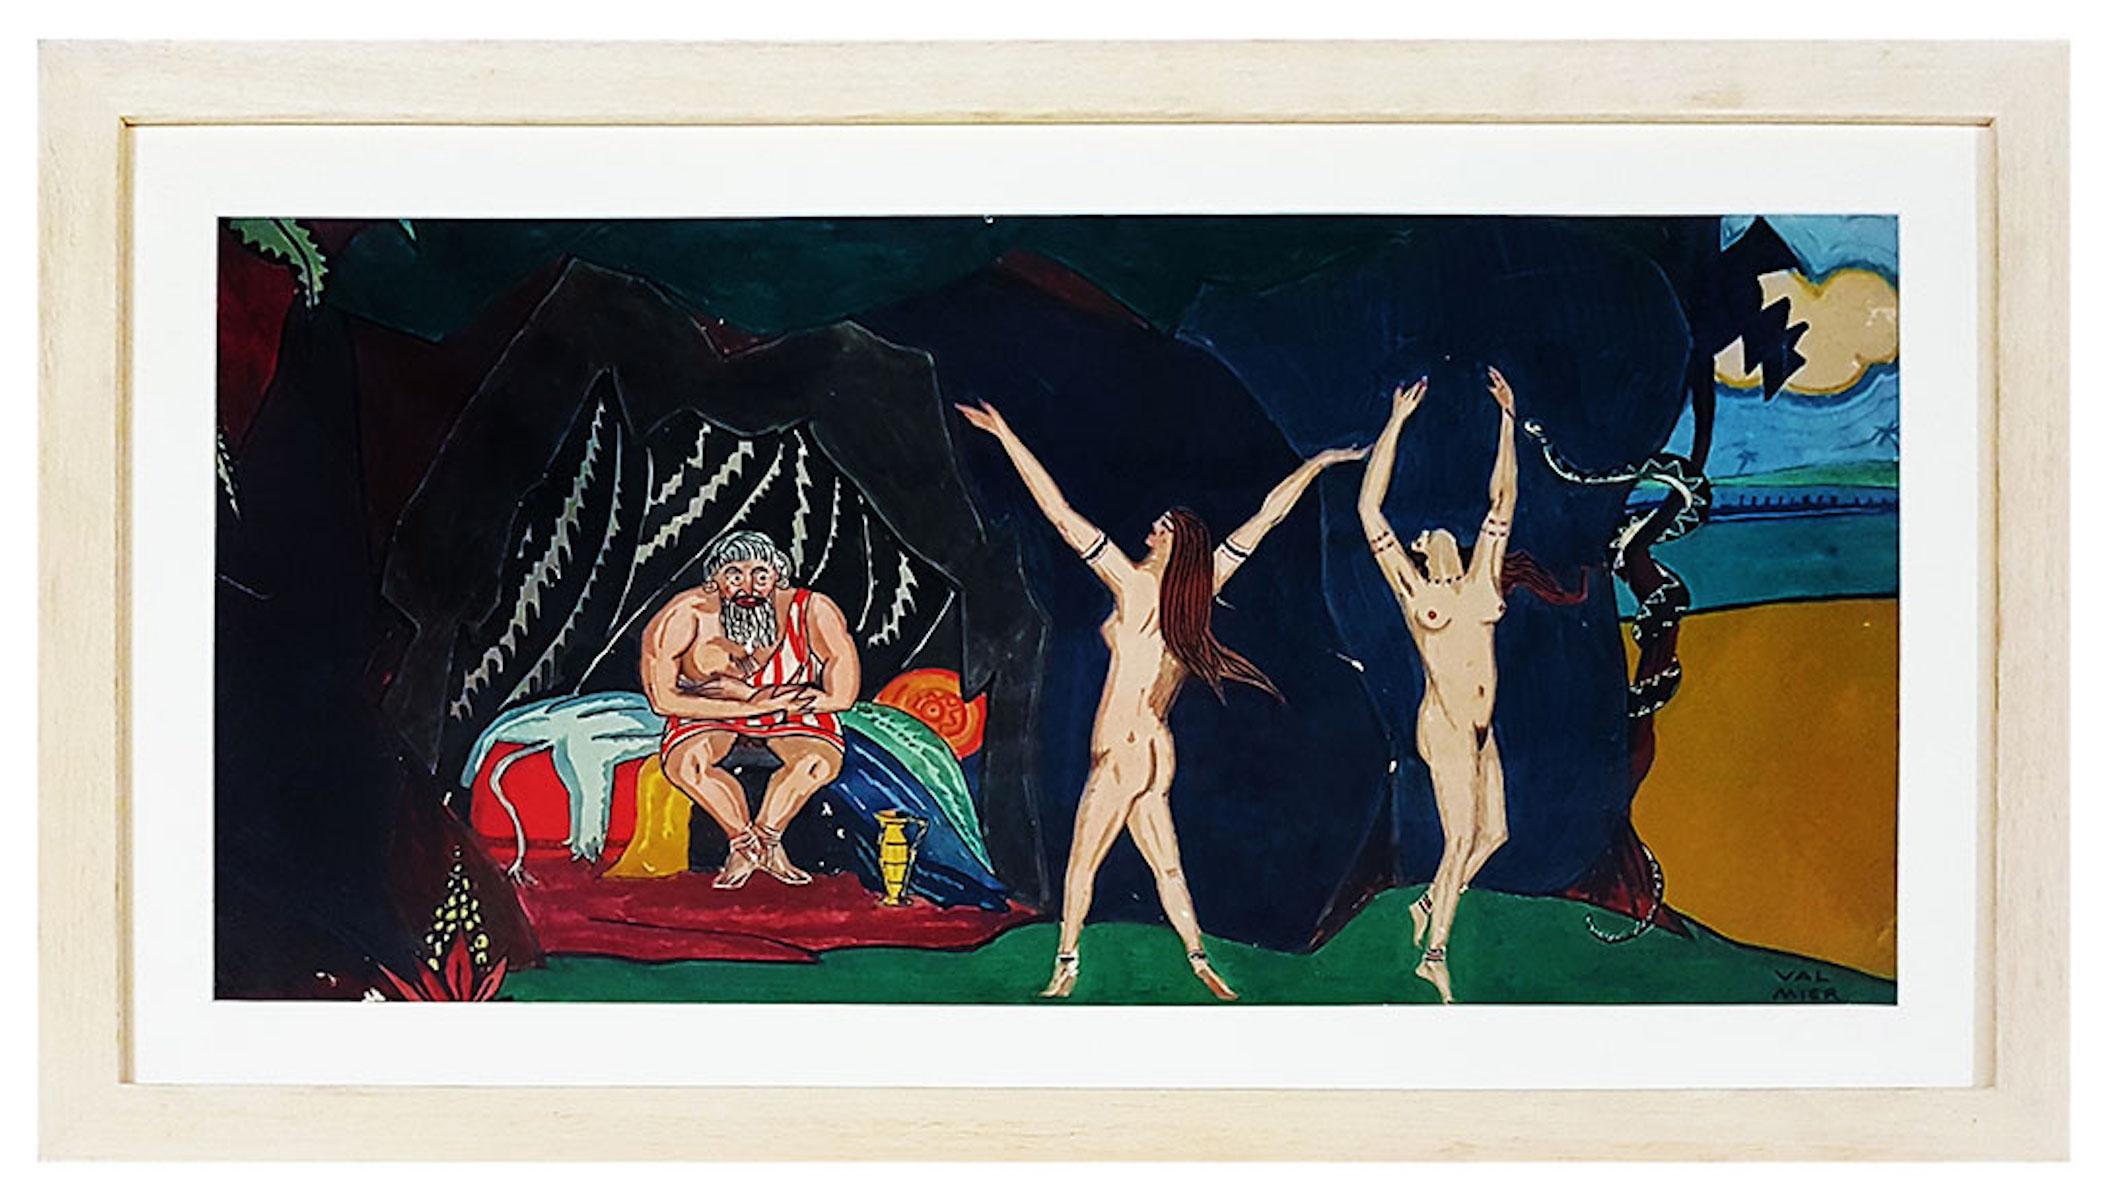 Die Versuchung  ist ein modernes Kunstwerk von Georges Valmier aus dem frühen 20. Jahrhundert.

Gemischte farbige Temperamalerei.

Handsigniert am unteren Rand.

Georges Valmier (Angoulême, 11. April 1885 - Paris, 25. März 1937) war ein